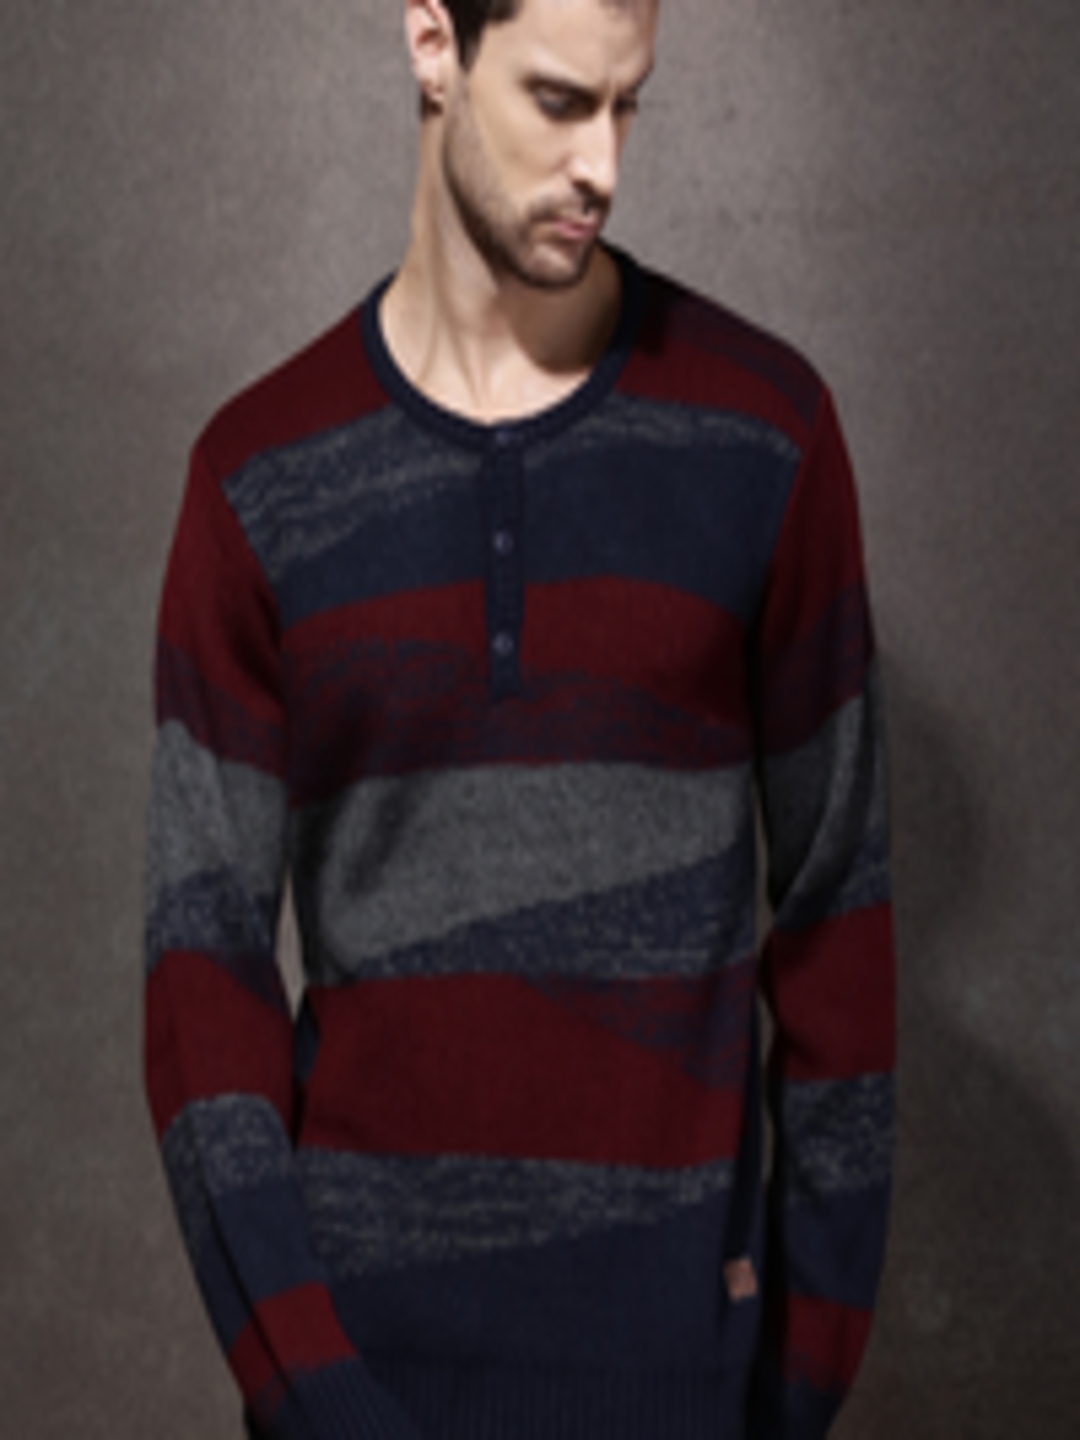 Buy Roadster Men Maroon & Navy Striped Sweater - Sweaters for Men ...